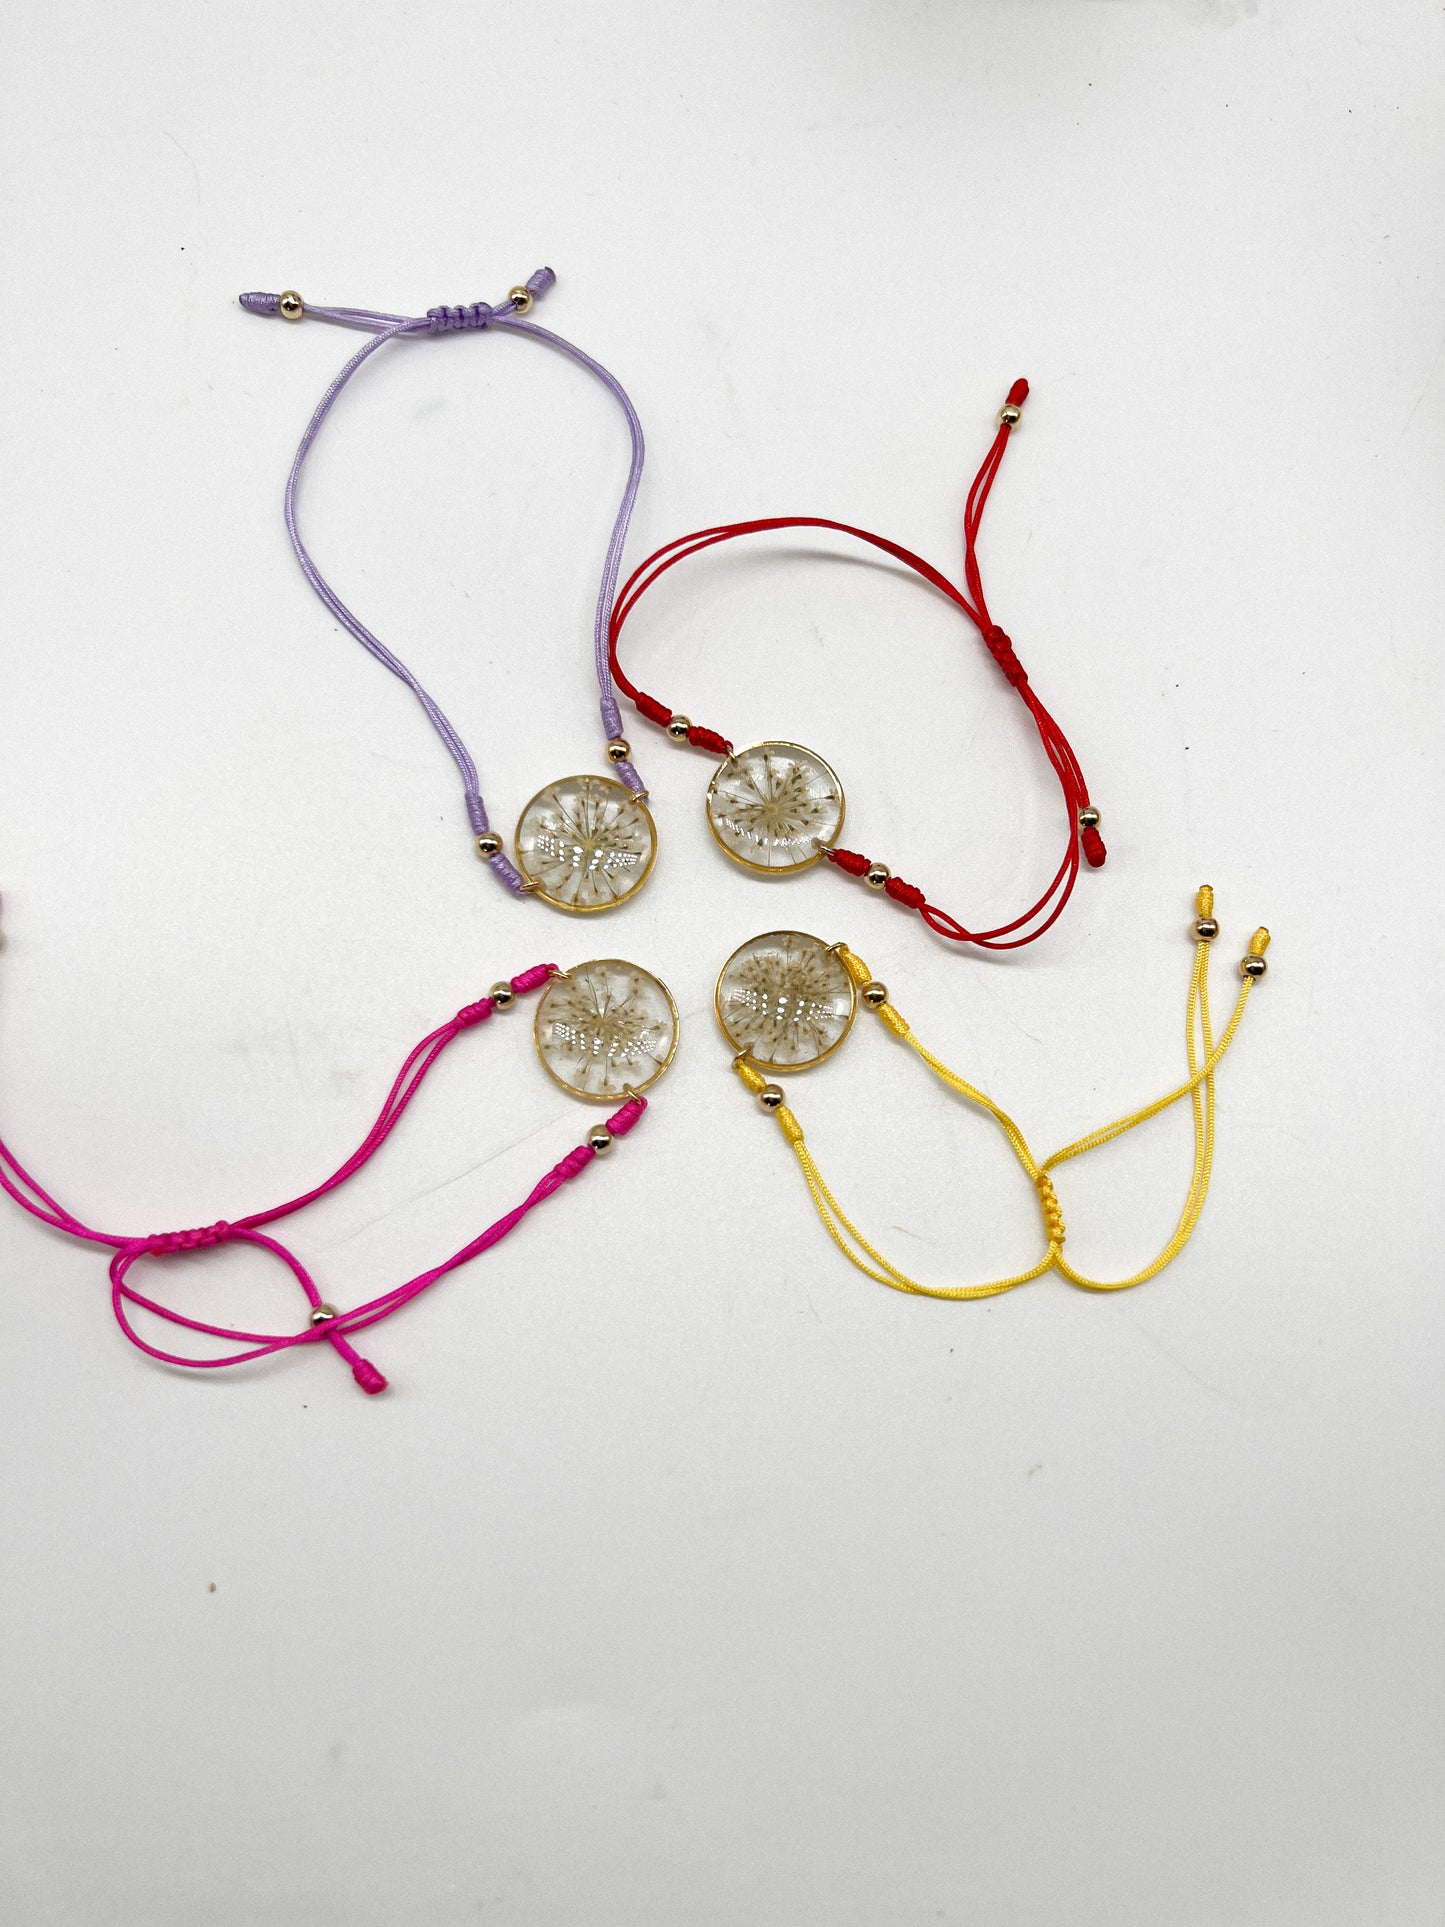 Pressed flower string bracelet